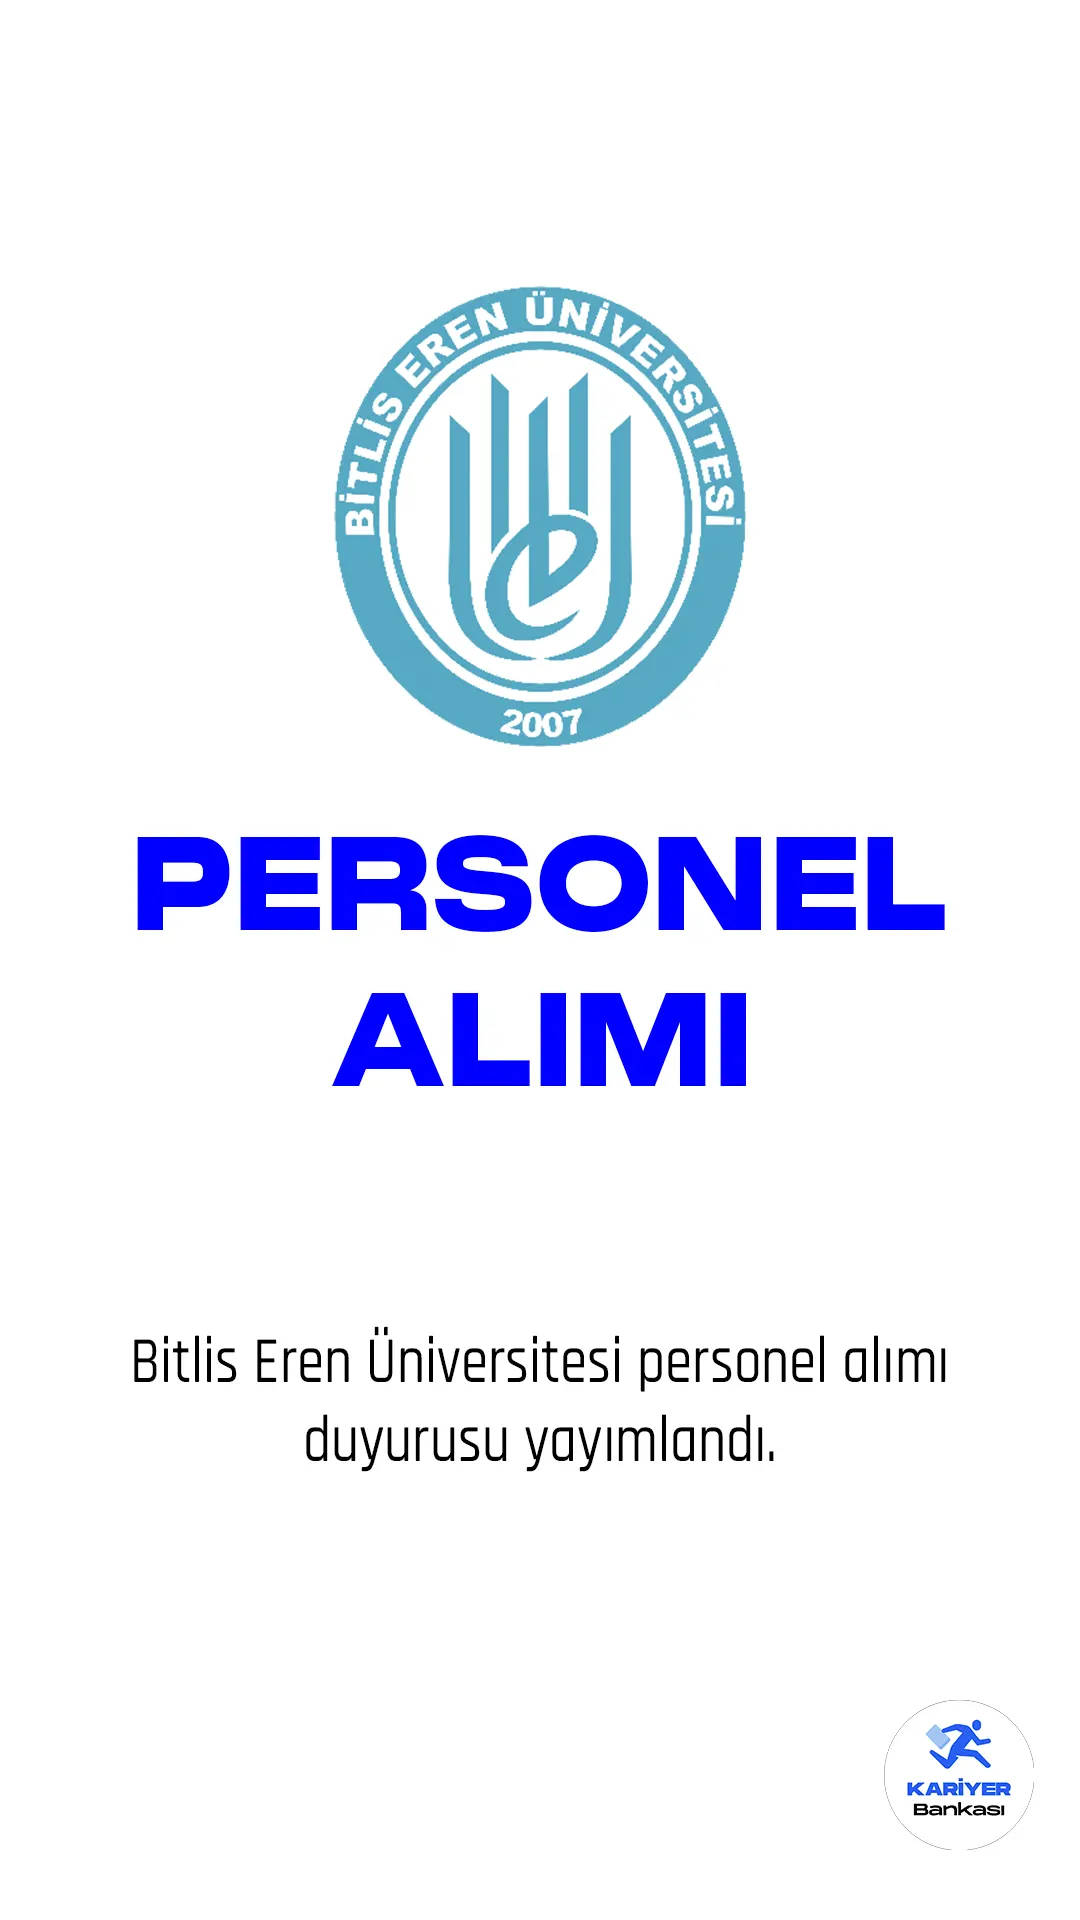 Bitlis Eren Üniversitesi personel alımı duyurusu yayımlandı. 14 Mart tarihli duyuruda, Üniversiteye büro personeli, spor uzmanı, teknisyen, destek personeli unvanlarında 10 sözleşmeli personel alımı yapılacağı aktarıldı. İlgili alım için başvurular 14 Mart -28 Mart 2023 tarihleri arasında alınacak. Başvuru yapacak adayların belirtilen şartları dikkatle incelemesi gerekmektedir.